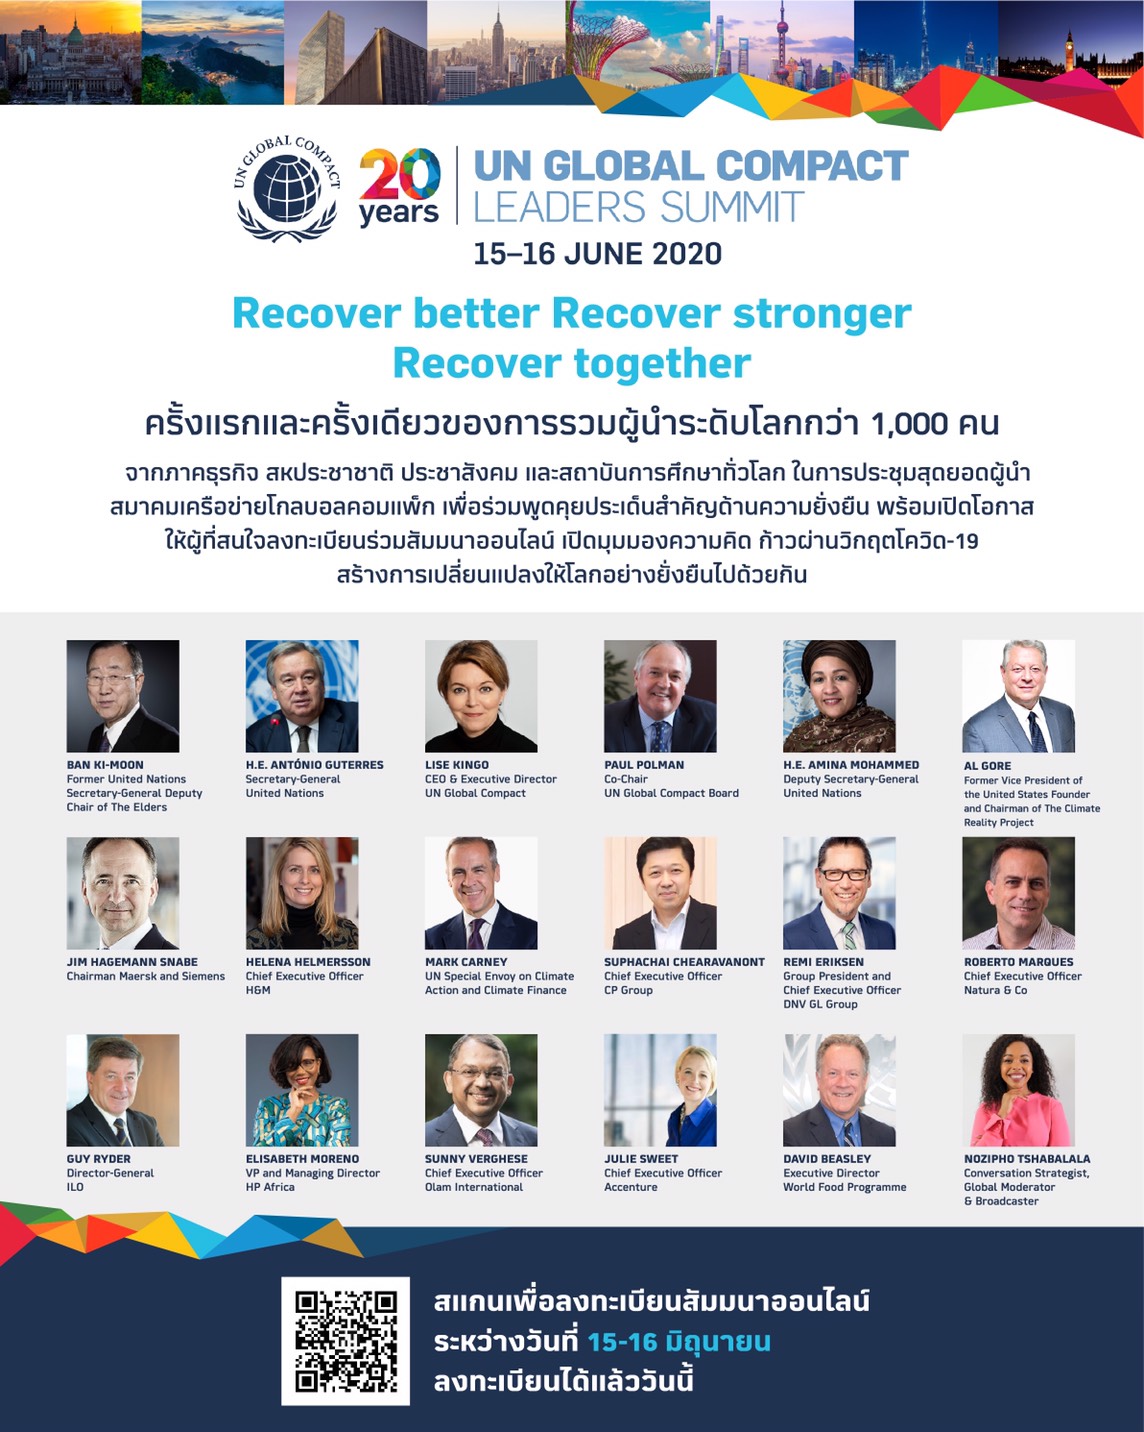 โกลบอลคอมแพ็ก (GCNT) เดรียมจัดฟอรั่มใหญ่ระดับโลก Virtual Leader Summit 2020